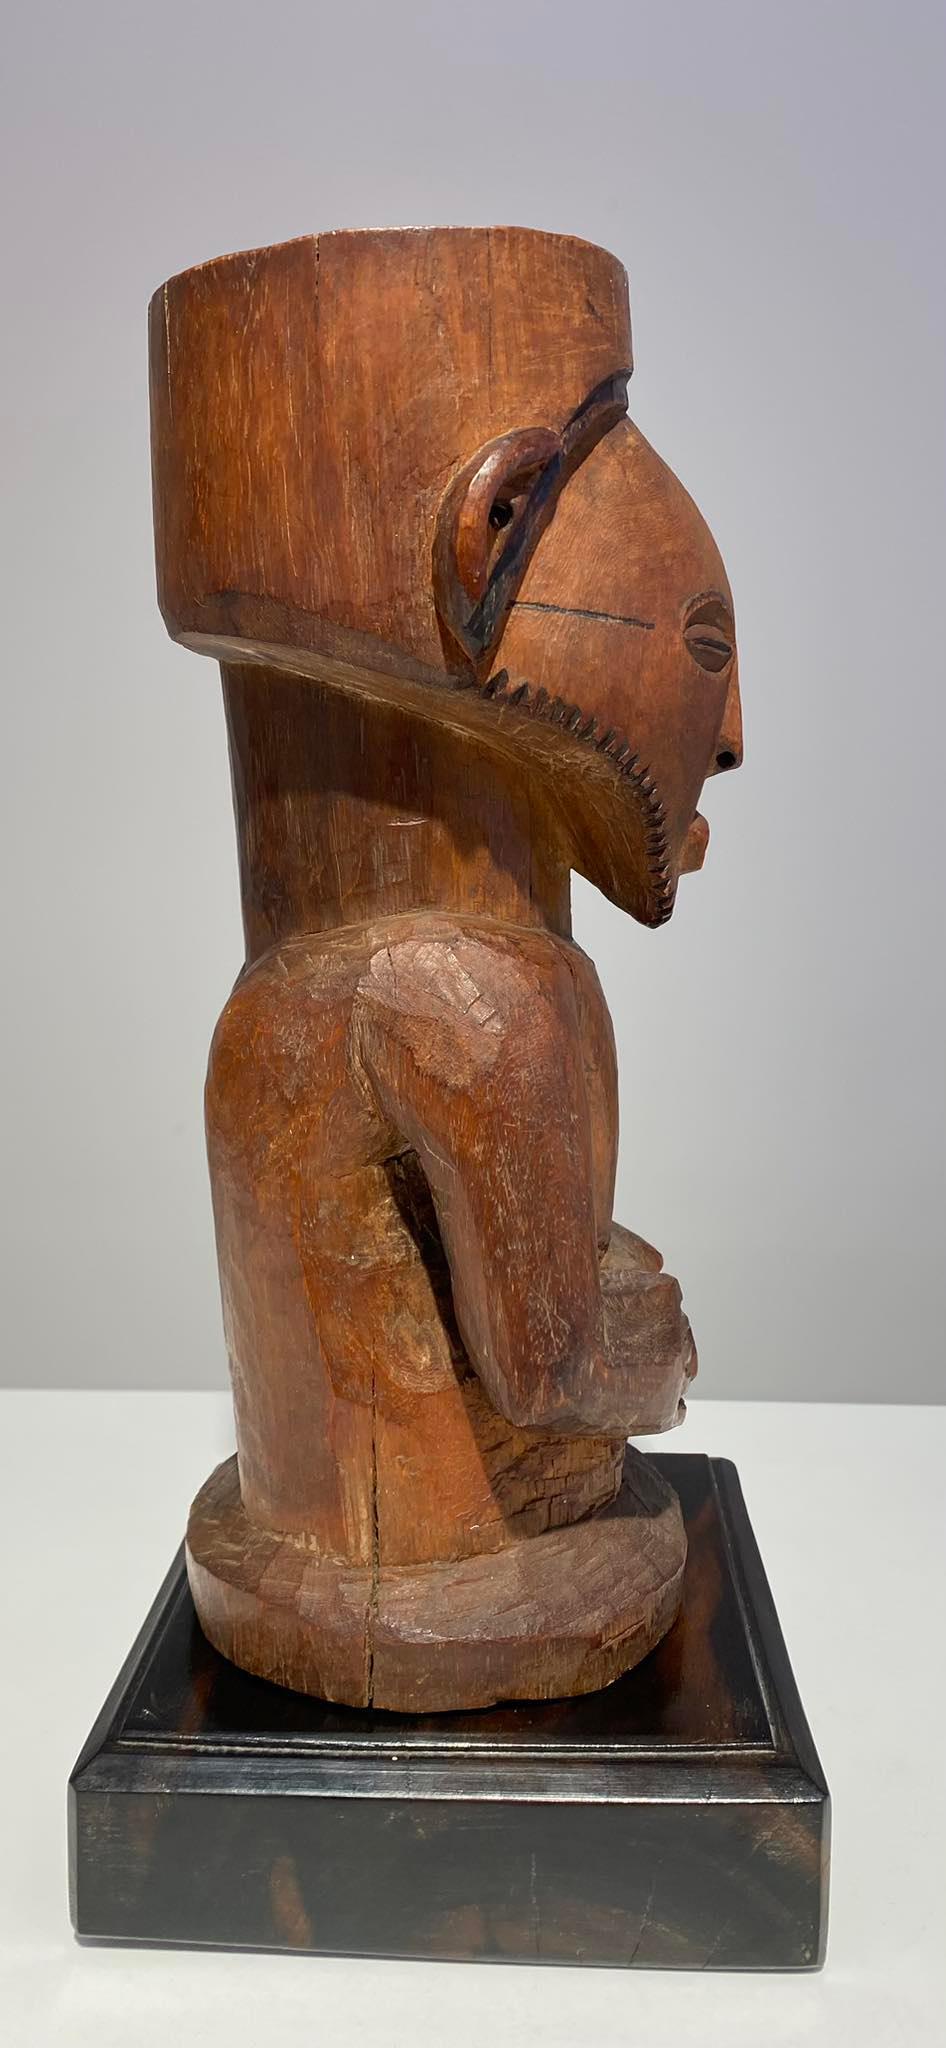 Hardwood Kusu wooden ancestor fetish ca 1900 DR Congo Africa Central African Tribal Art For Sale